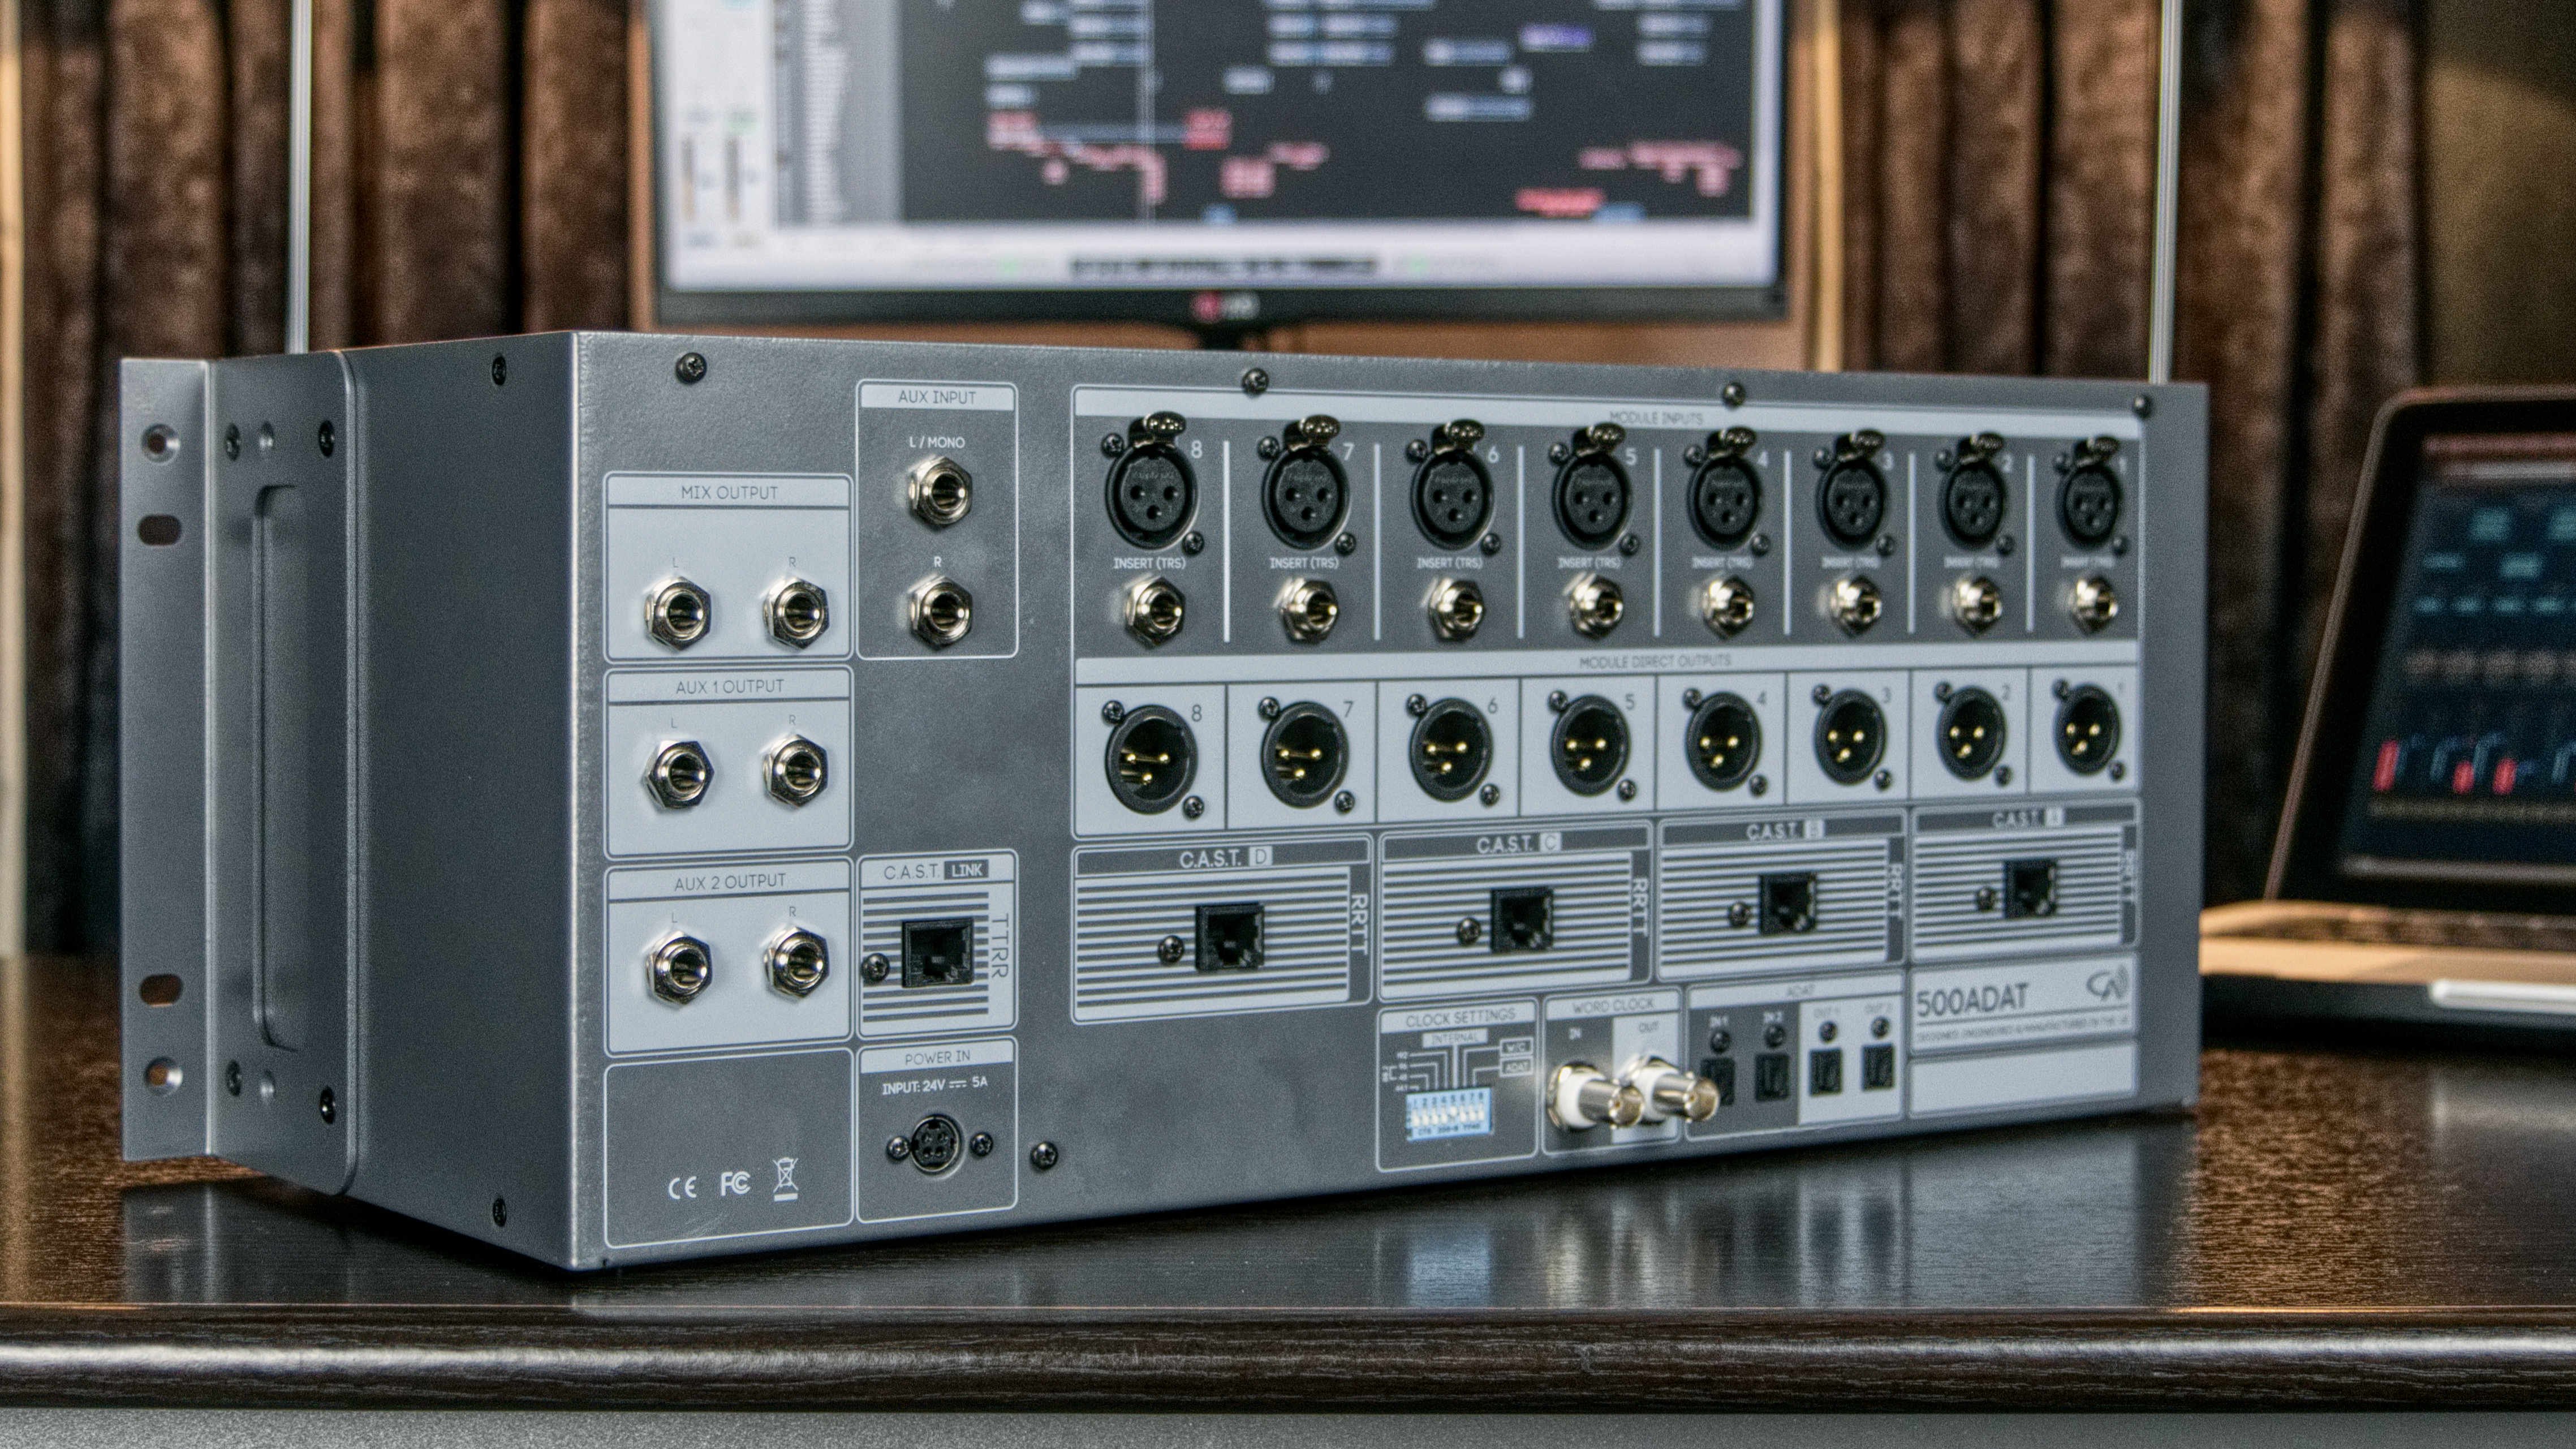 Cranborne Audio 500ADAT - ADAT expander, summing mixer, & 8-slot 500